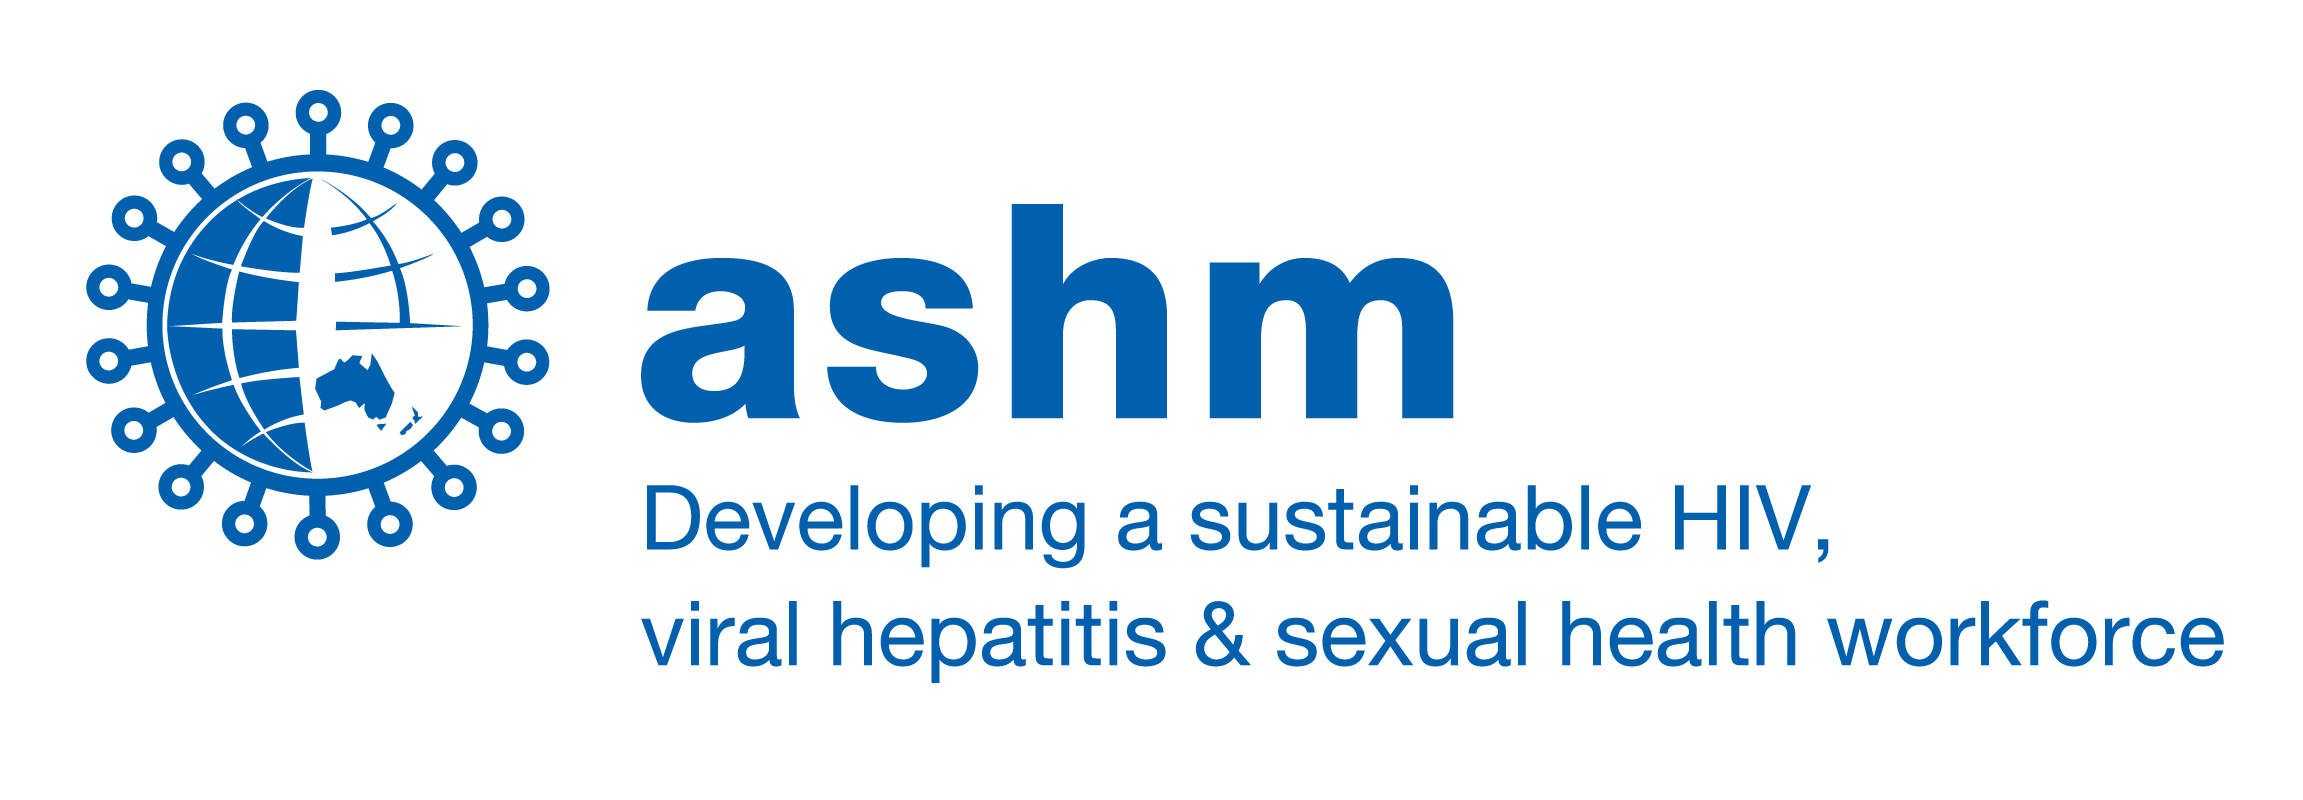 ASHM tagline